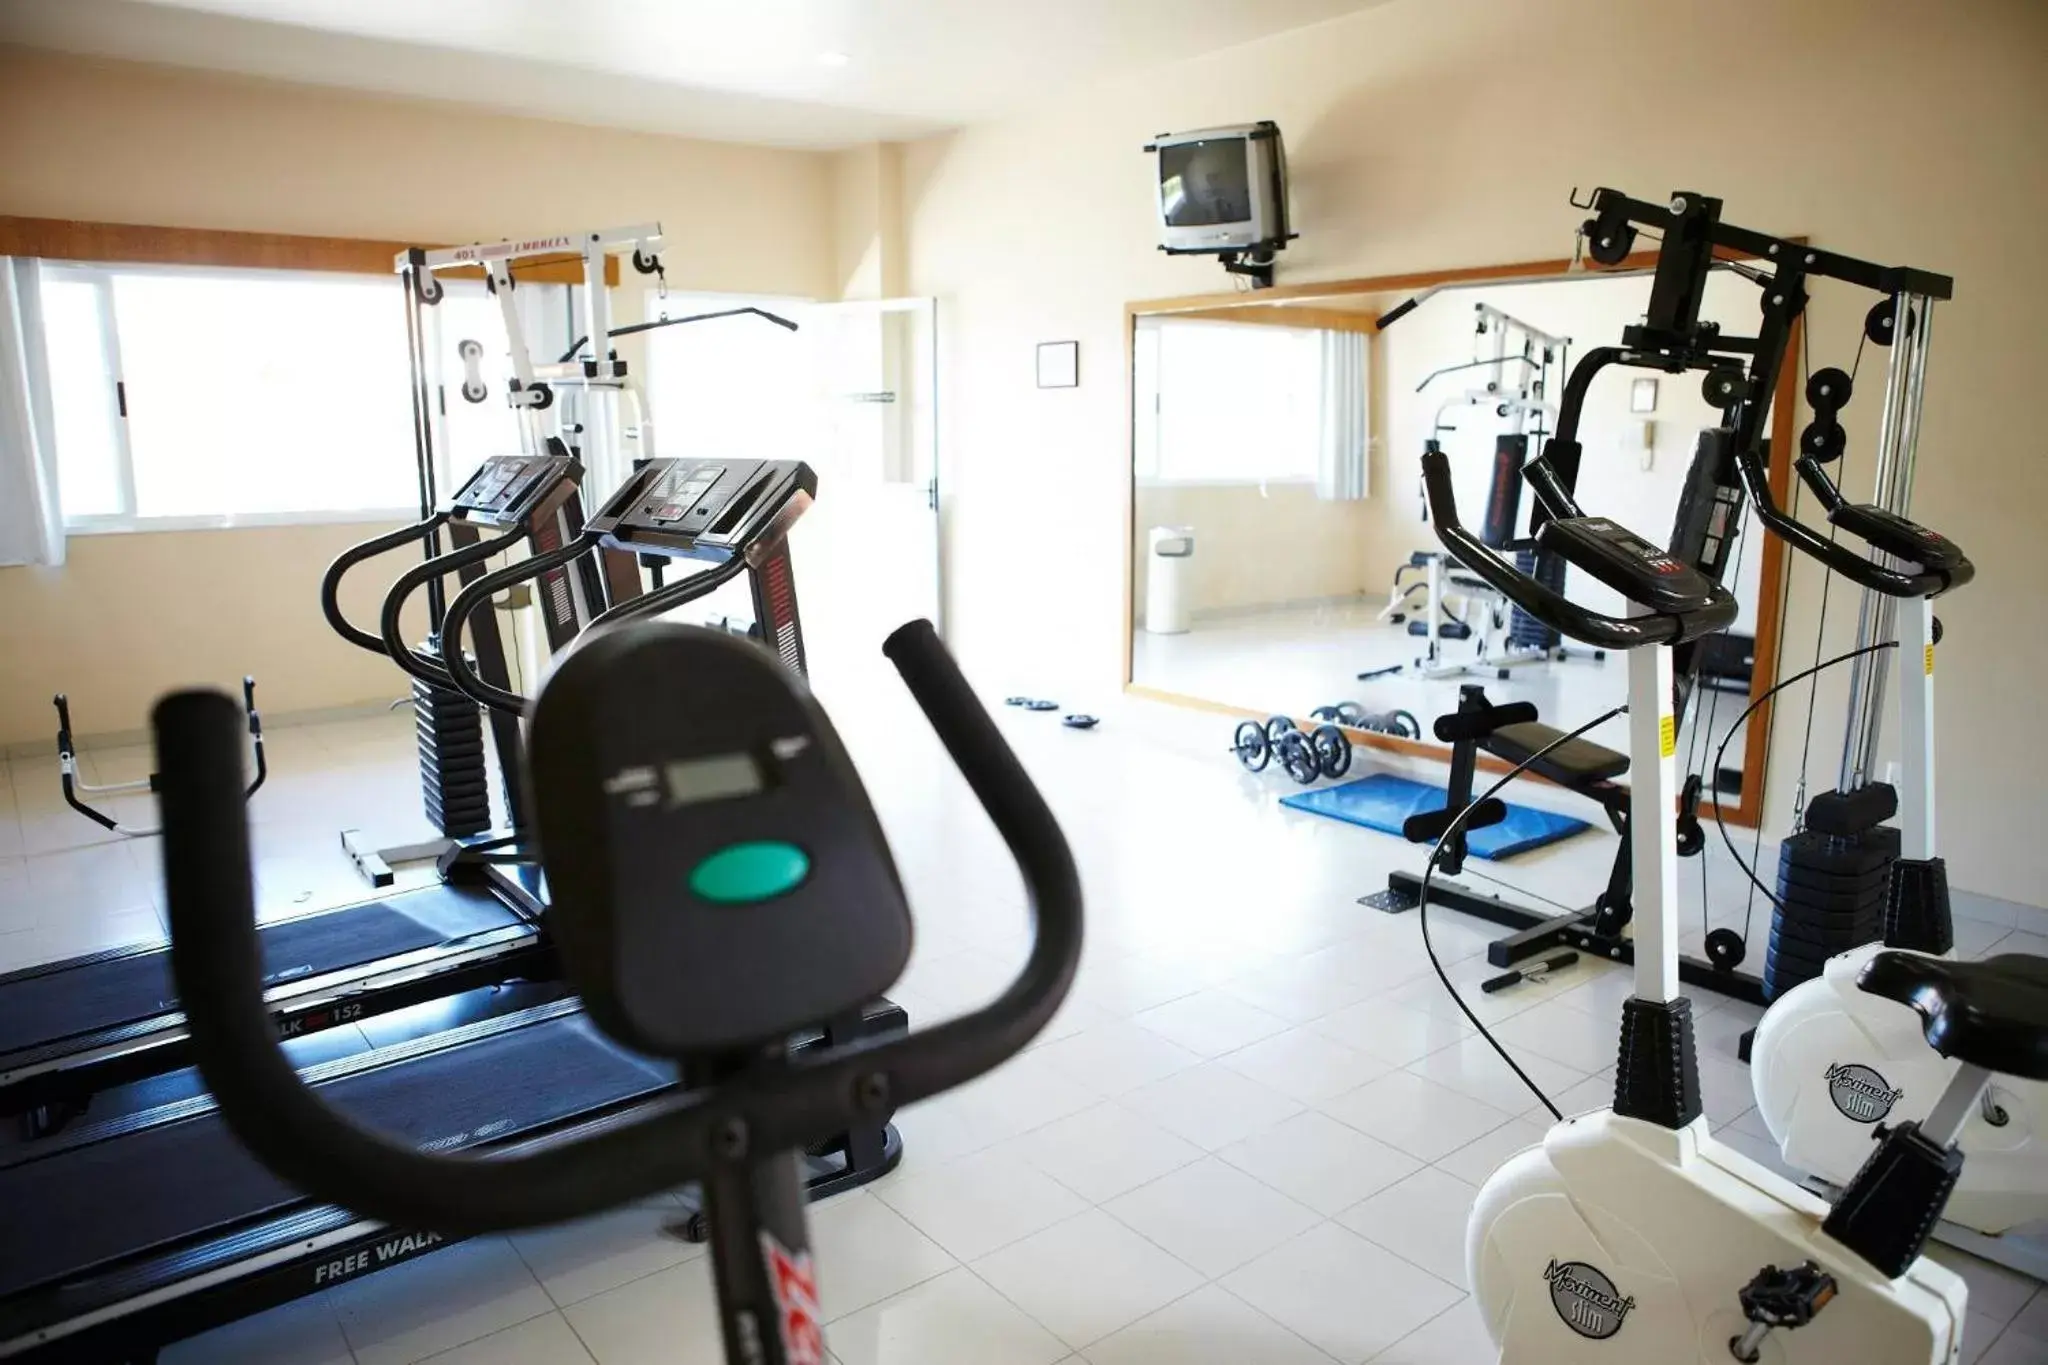 Fitness centre/facilities, Fitness Center/Facilities in Hotel Estação 101 - Brusque